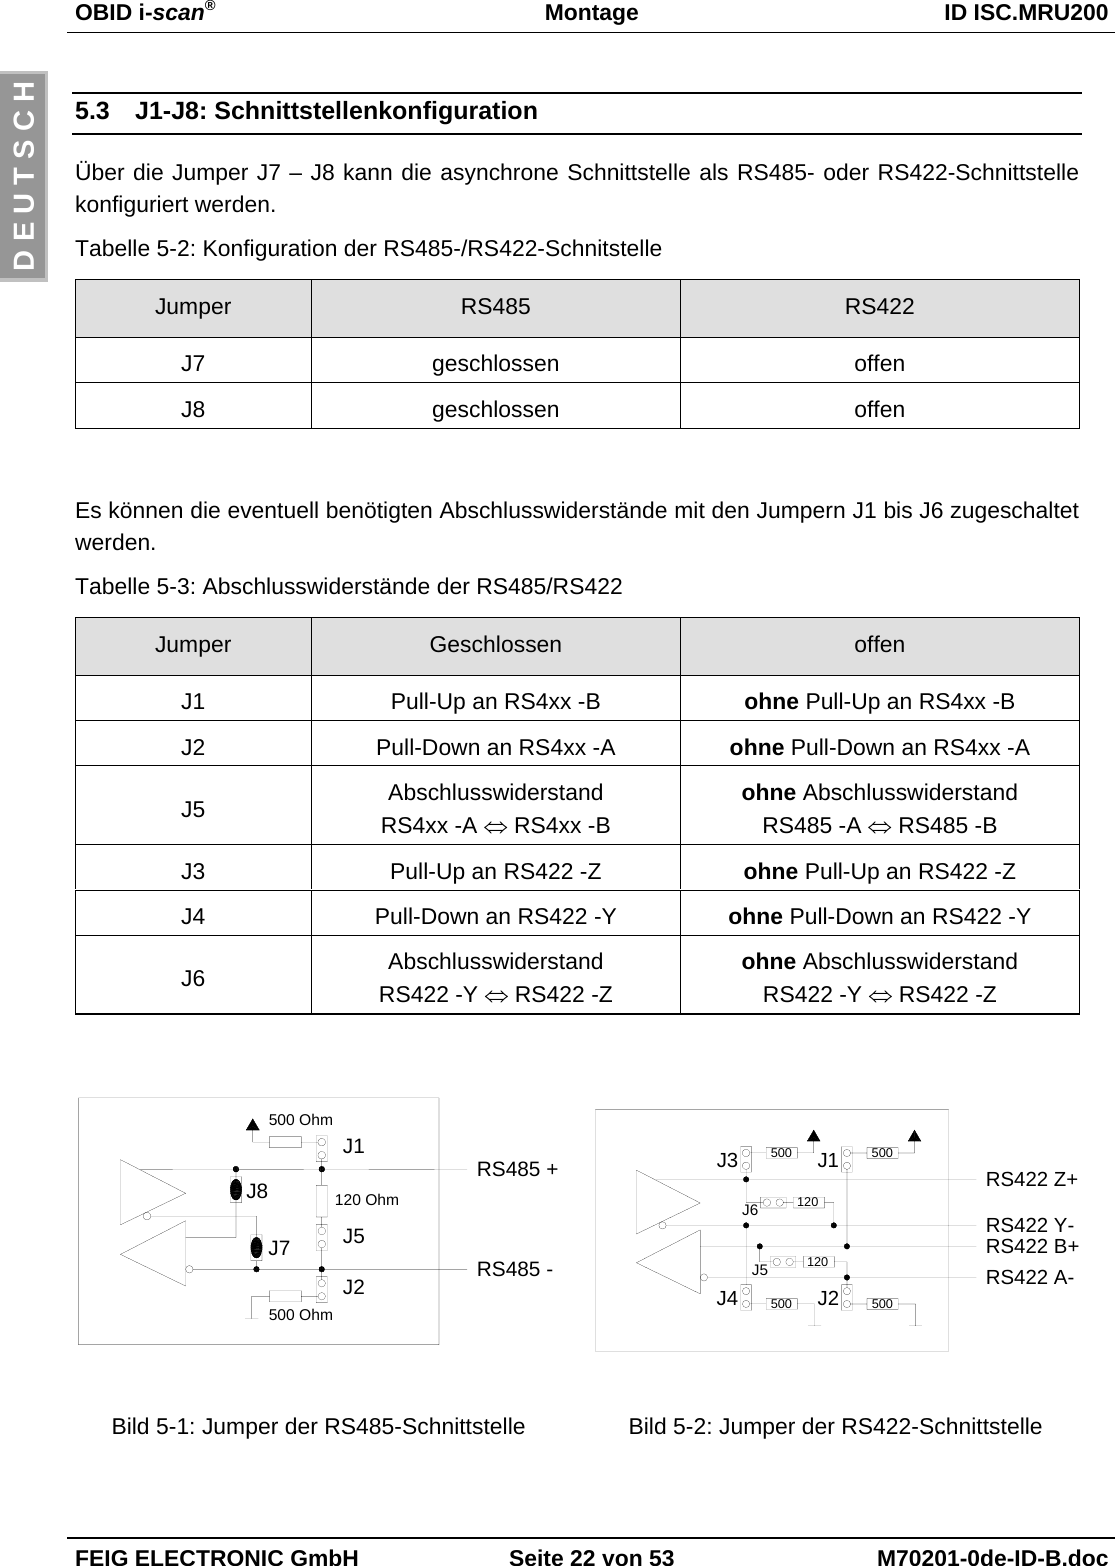 OBID i-scan®Montage ID ISC.MRU200FEIG ELECTRONIC GmbH Seite 22 von 53 M70201-0de-ID-B.docD E U T S C H5.3 J1-J8: SchnittstellenkonfigurationÜber die Jumper J7 – J8 kann die asynchrone Schnittstelle als RS485- oder RS422-Schnittstellekonfiguriert werden.Tabelle 5-2: Konfiguration der RS485-/RS422-SchnitstelleJumper RS485 RS422J7 geschlossen offenJ8 geschlossen offenEs können die eventuell benötigten Abschlusswiderstände mit den Jumpern J1 bis J6 zugeschaltetwerden.Tabelle 5-3: Abschlusswiderstände der RS485/RS422Jumper Geschlossen offenJ1 Pull-Up an RS4xx -B ohne Pull-Up an RS4xx -BJ2 Pull-Down an RS4xx -A ohne Pull-Down an RS4xx -AJ5 AbschlusswiderstandRS4xx -A ⇔ RS4xx -Bohne AbschlusswiderstandRS485 -A ⇔ RS485 -BJ3 Pull-Up an RS422 -Z ohne Pull-Up an RS422 -ZJ4 Pull-Down an RS422 -Y ohne Pull-Down an RS422 -YJ6 AbschlusswiderstandRS422 -Y ⇔ RS422 -Zohne AbschlusswiderstandRS422 -Y ⇔ RS422 -ZRS485 +J1J5J2500 Ohm500 Ohm120 OhmJ7J8RS485 -RS422 Y-RS422 B+500500 500120120J2J3 J1J6J5RS422 Z+J4 500RS422 A-Bild 5-1: Jumper der RS485-Schnittstelle Bild 5-2: Jumper der RS422-Schnittstelle